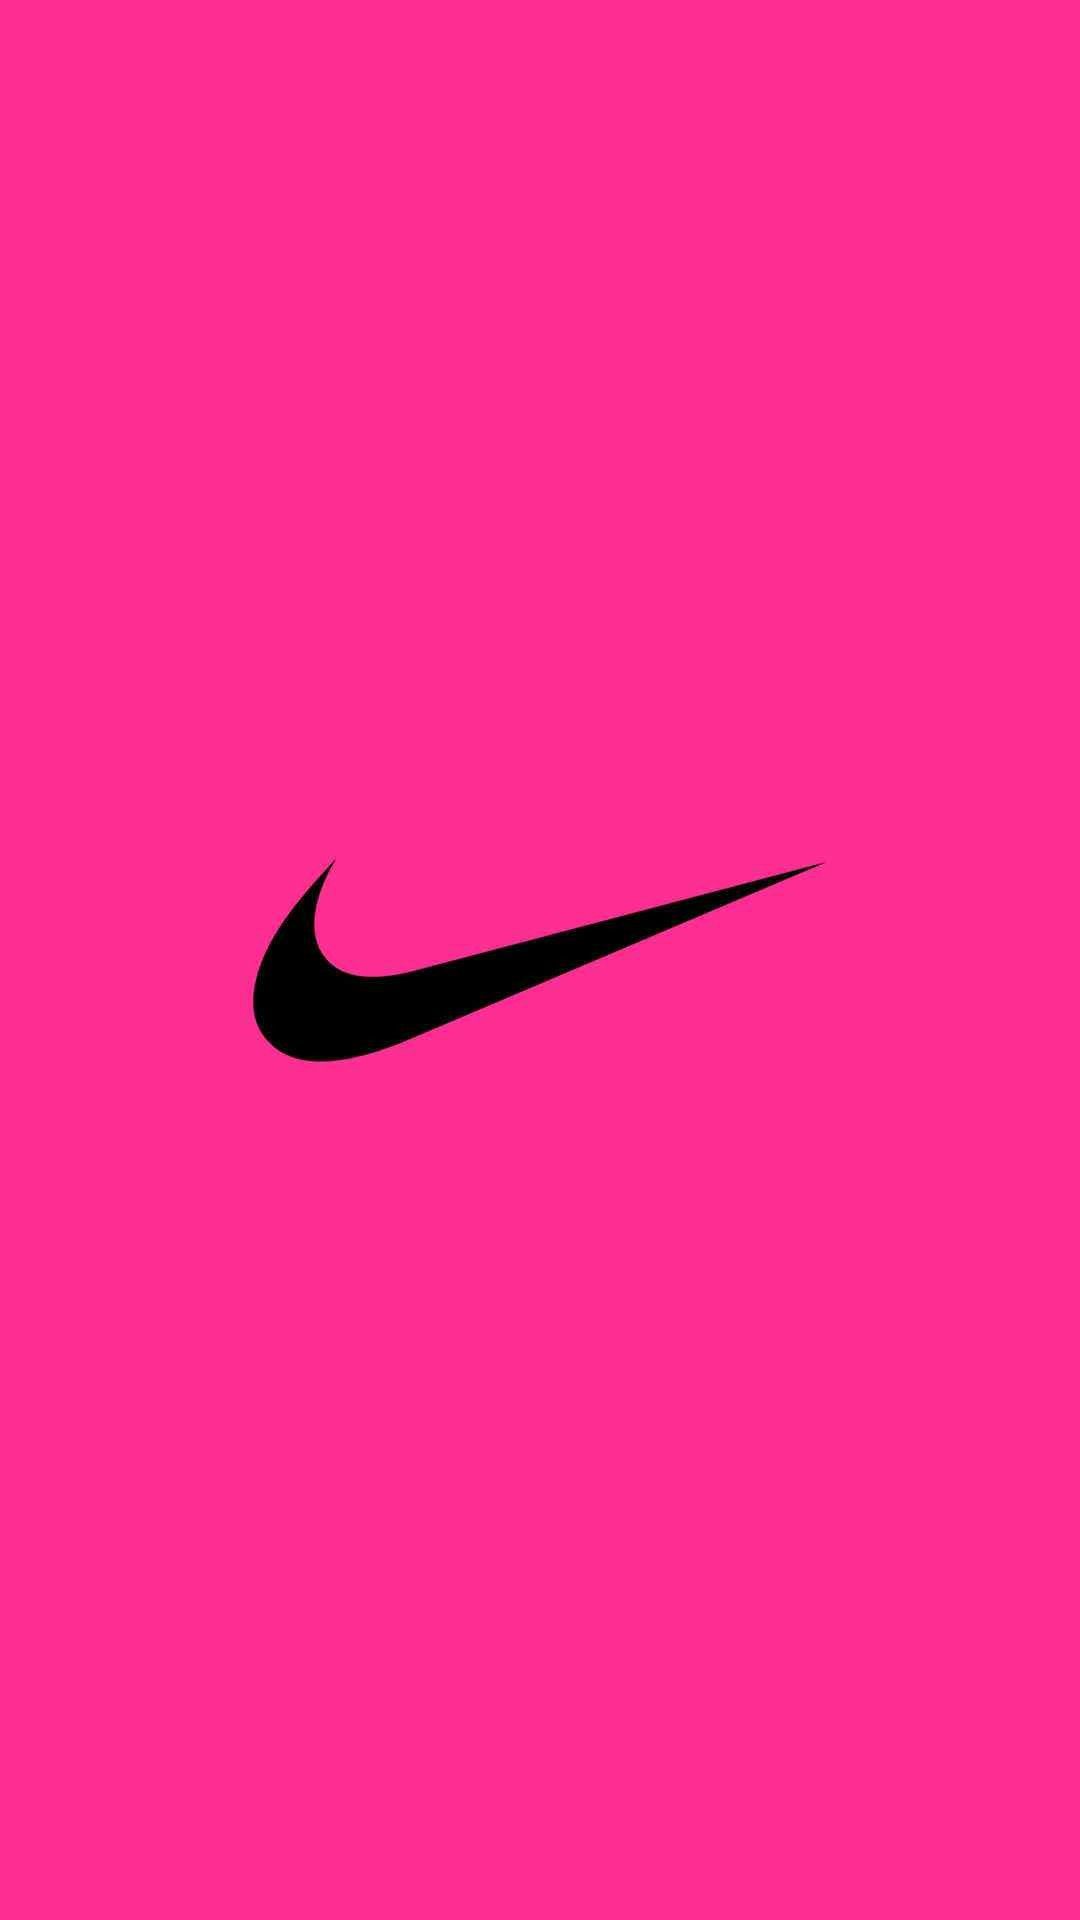 Các tín đồ Nike thân yêu, hãy thử xem bộ sưu tập hình nền đầy màu sắc này. Với logo Nike hồng nổi bật trên nền trắng tinh khôi, các họa tiết tinh tế và tươi sáng, đây chắc chắn là bộ sưu tập hình nền mà bạn không thể bỏ qua.